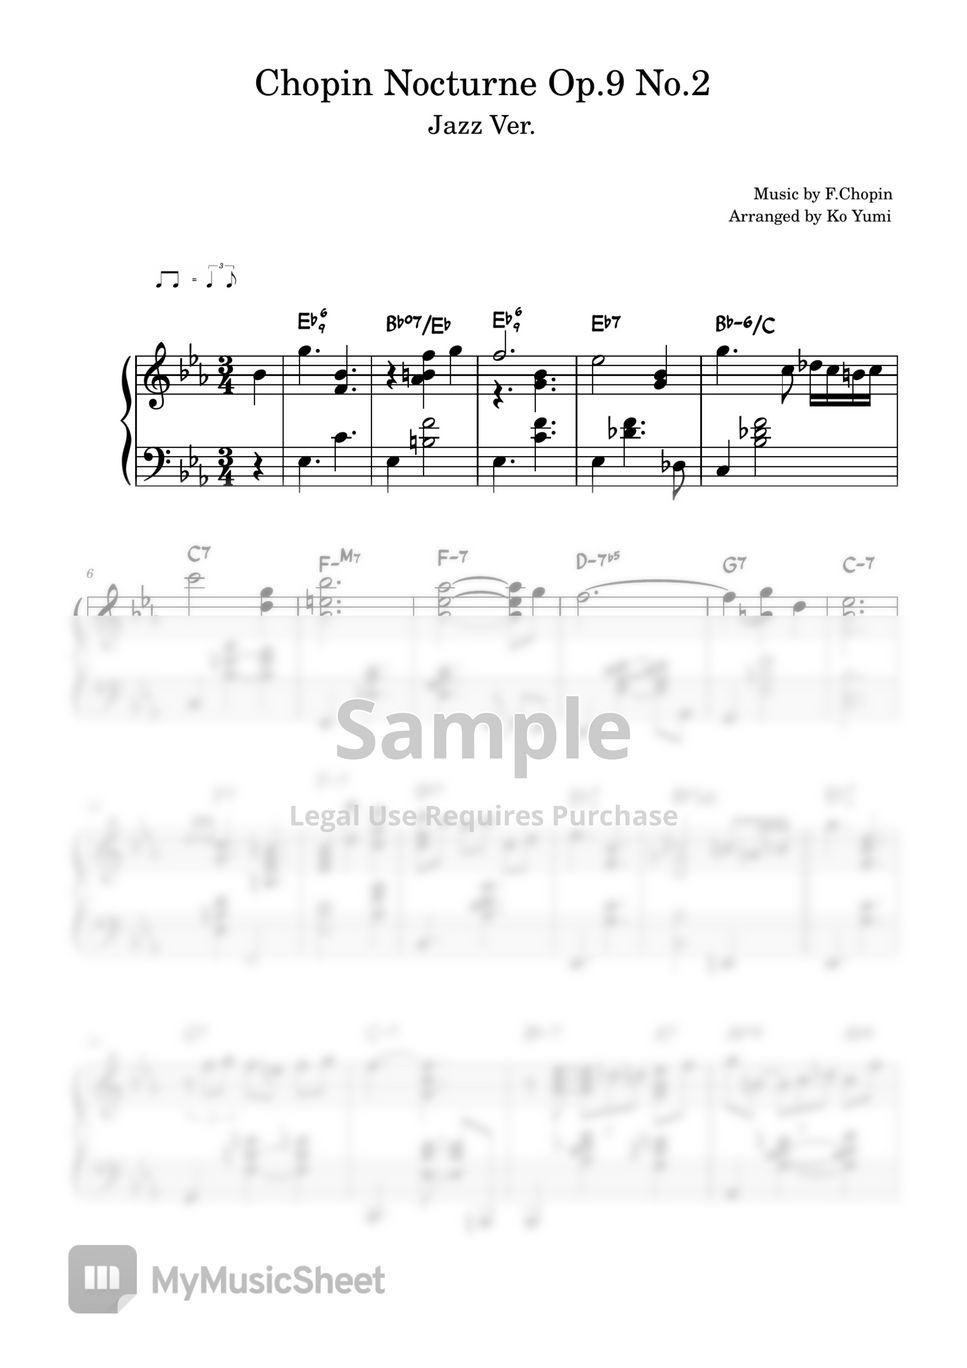 Chopin - Nocturne Op.2 No.2 (Jazz Ver.) by KoYumi Music